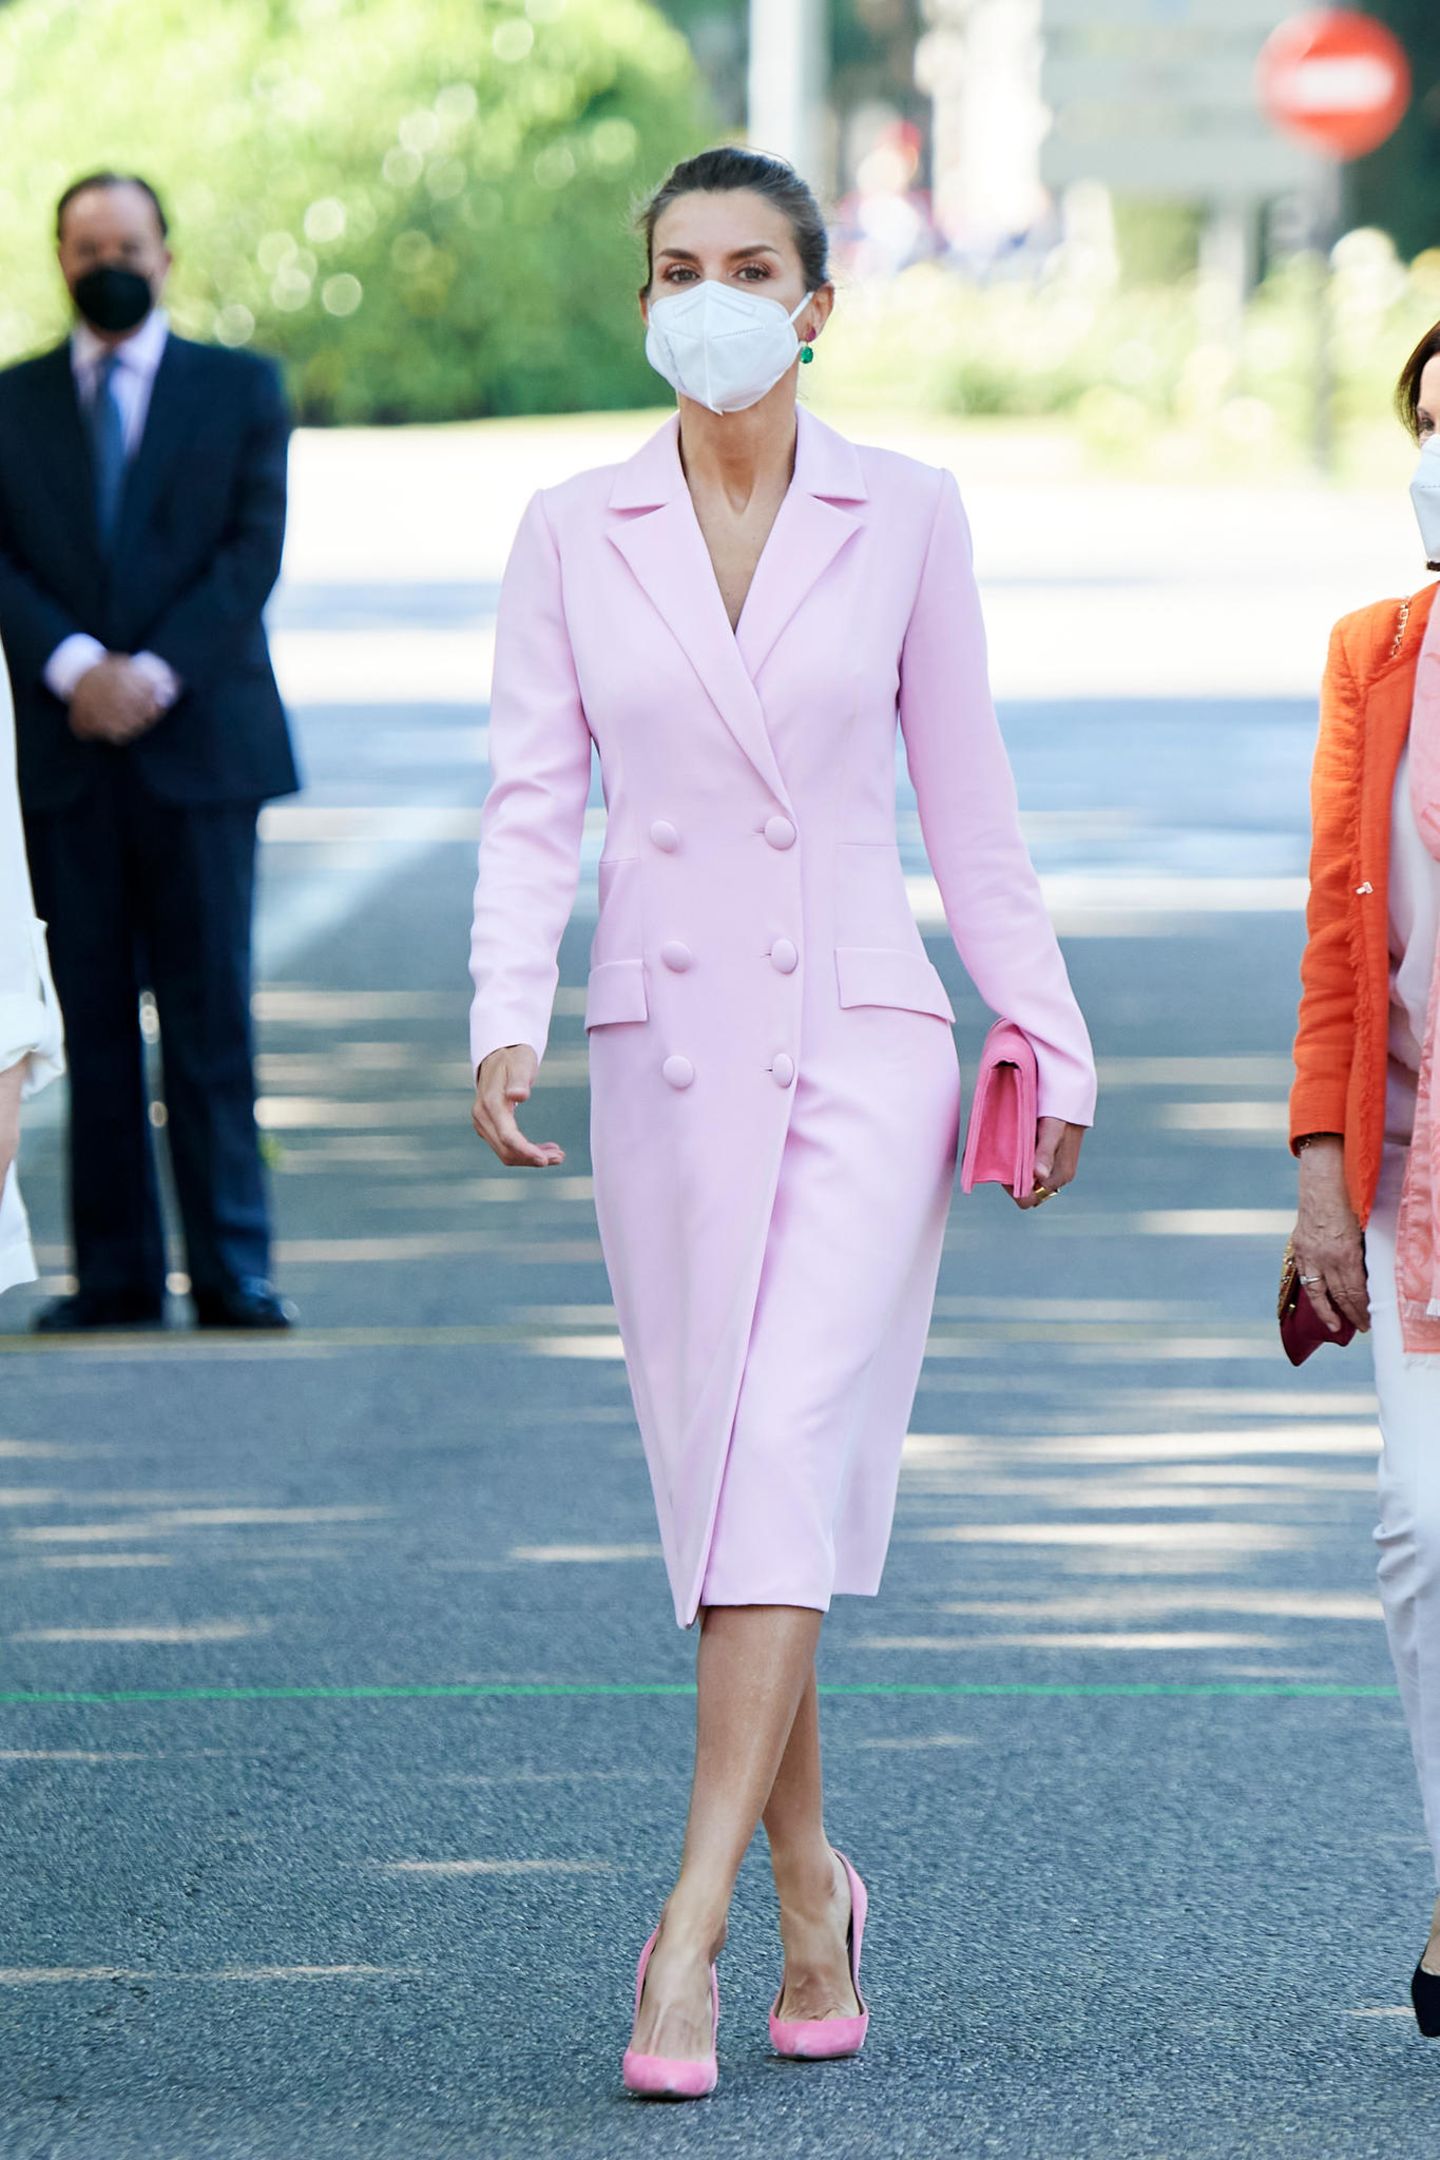 Ein Traum in Rosa! Bei einem offiziellen Termin zeigt sich Königin Letizia von Spanien in diesem traumhaften Outfit. Sie kombiniert das figurbetonte Blazerkleid mit roséfarbenen Samt-Pumps und einer pinken Clutch. Ihre Ohrringe wählt sie allerdings in einem ganz anderen Ton ...